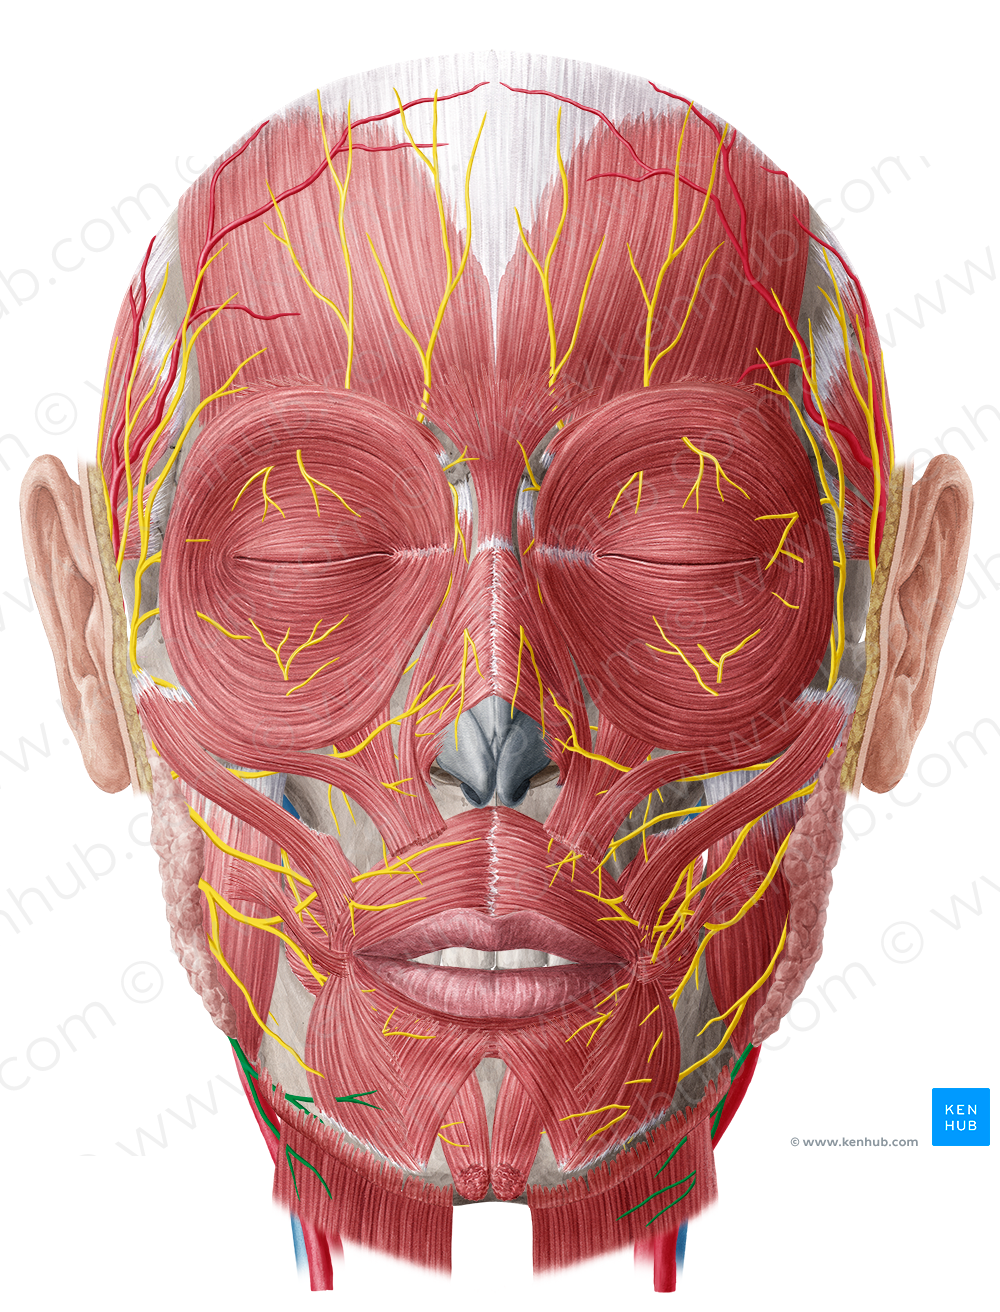 Cervical branch of facial nerve (#8625)